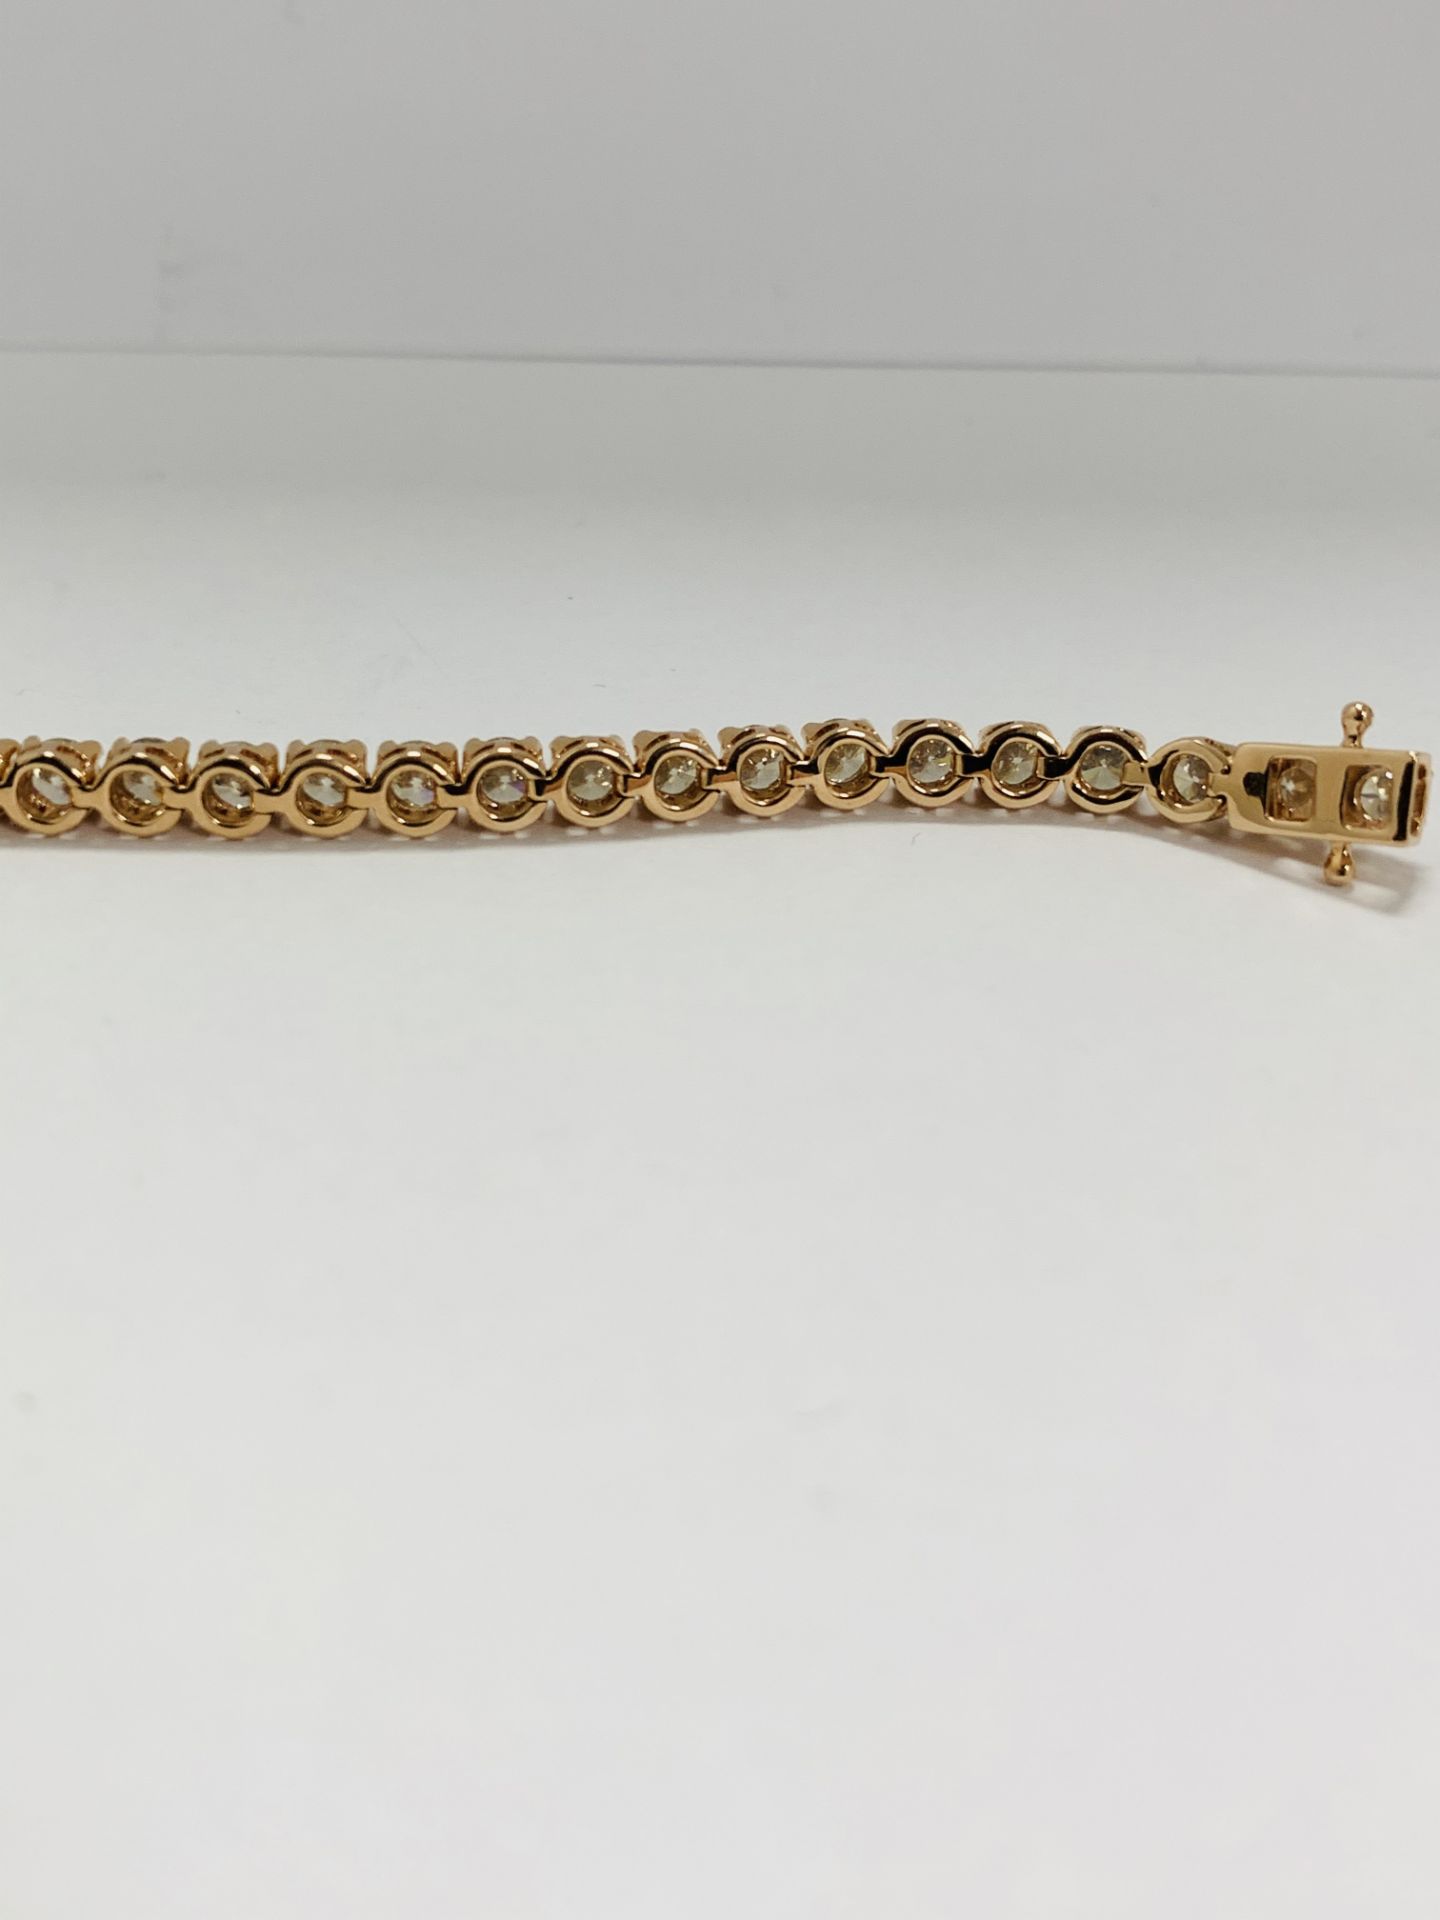 14K Rose Gold Bracelet - Image 8 of 20